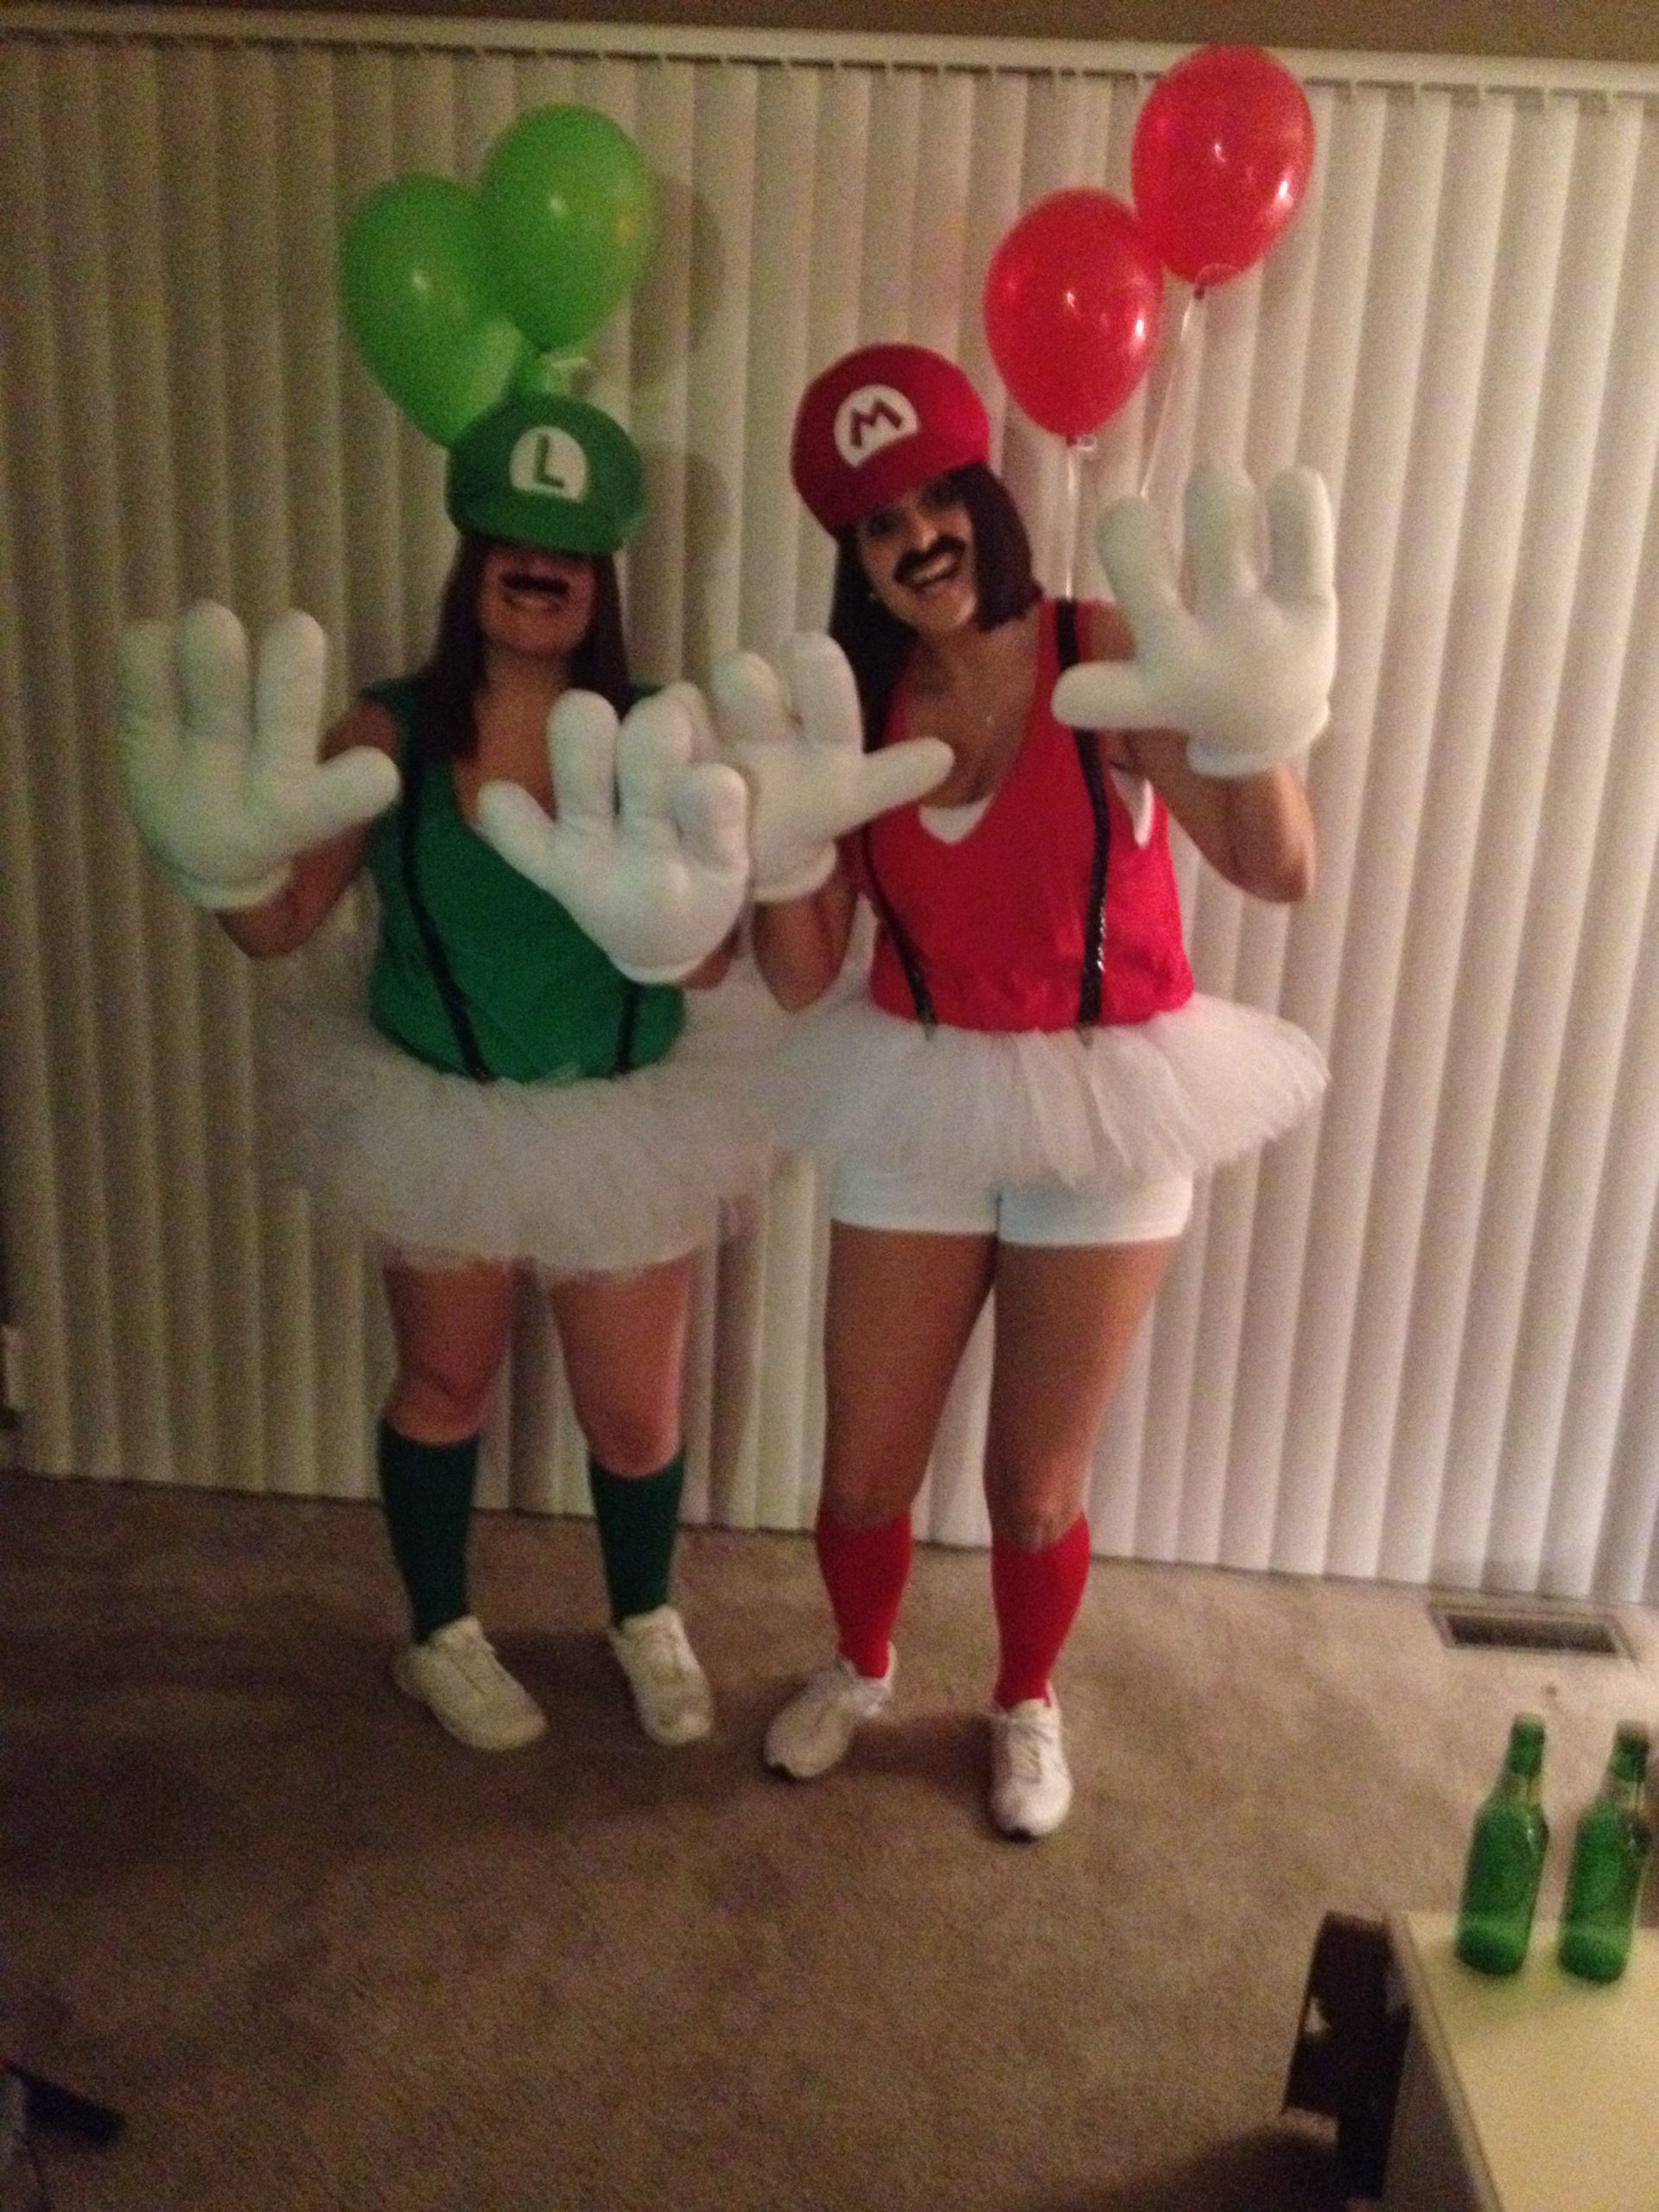 Fantasia Mario e Luigi Como fazer, passo a passo